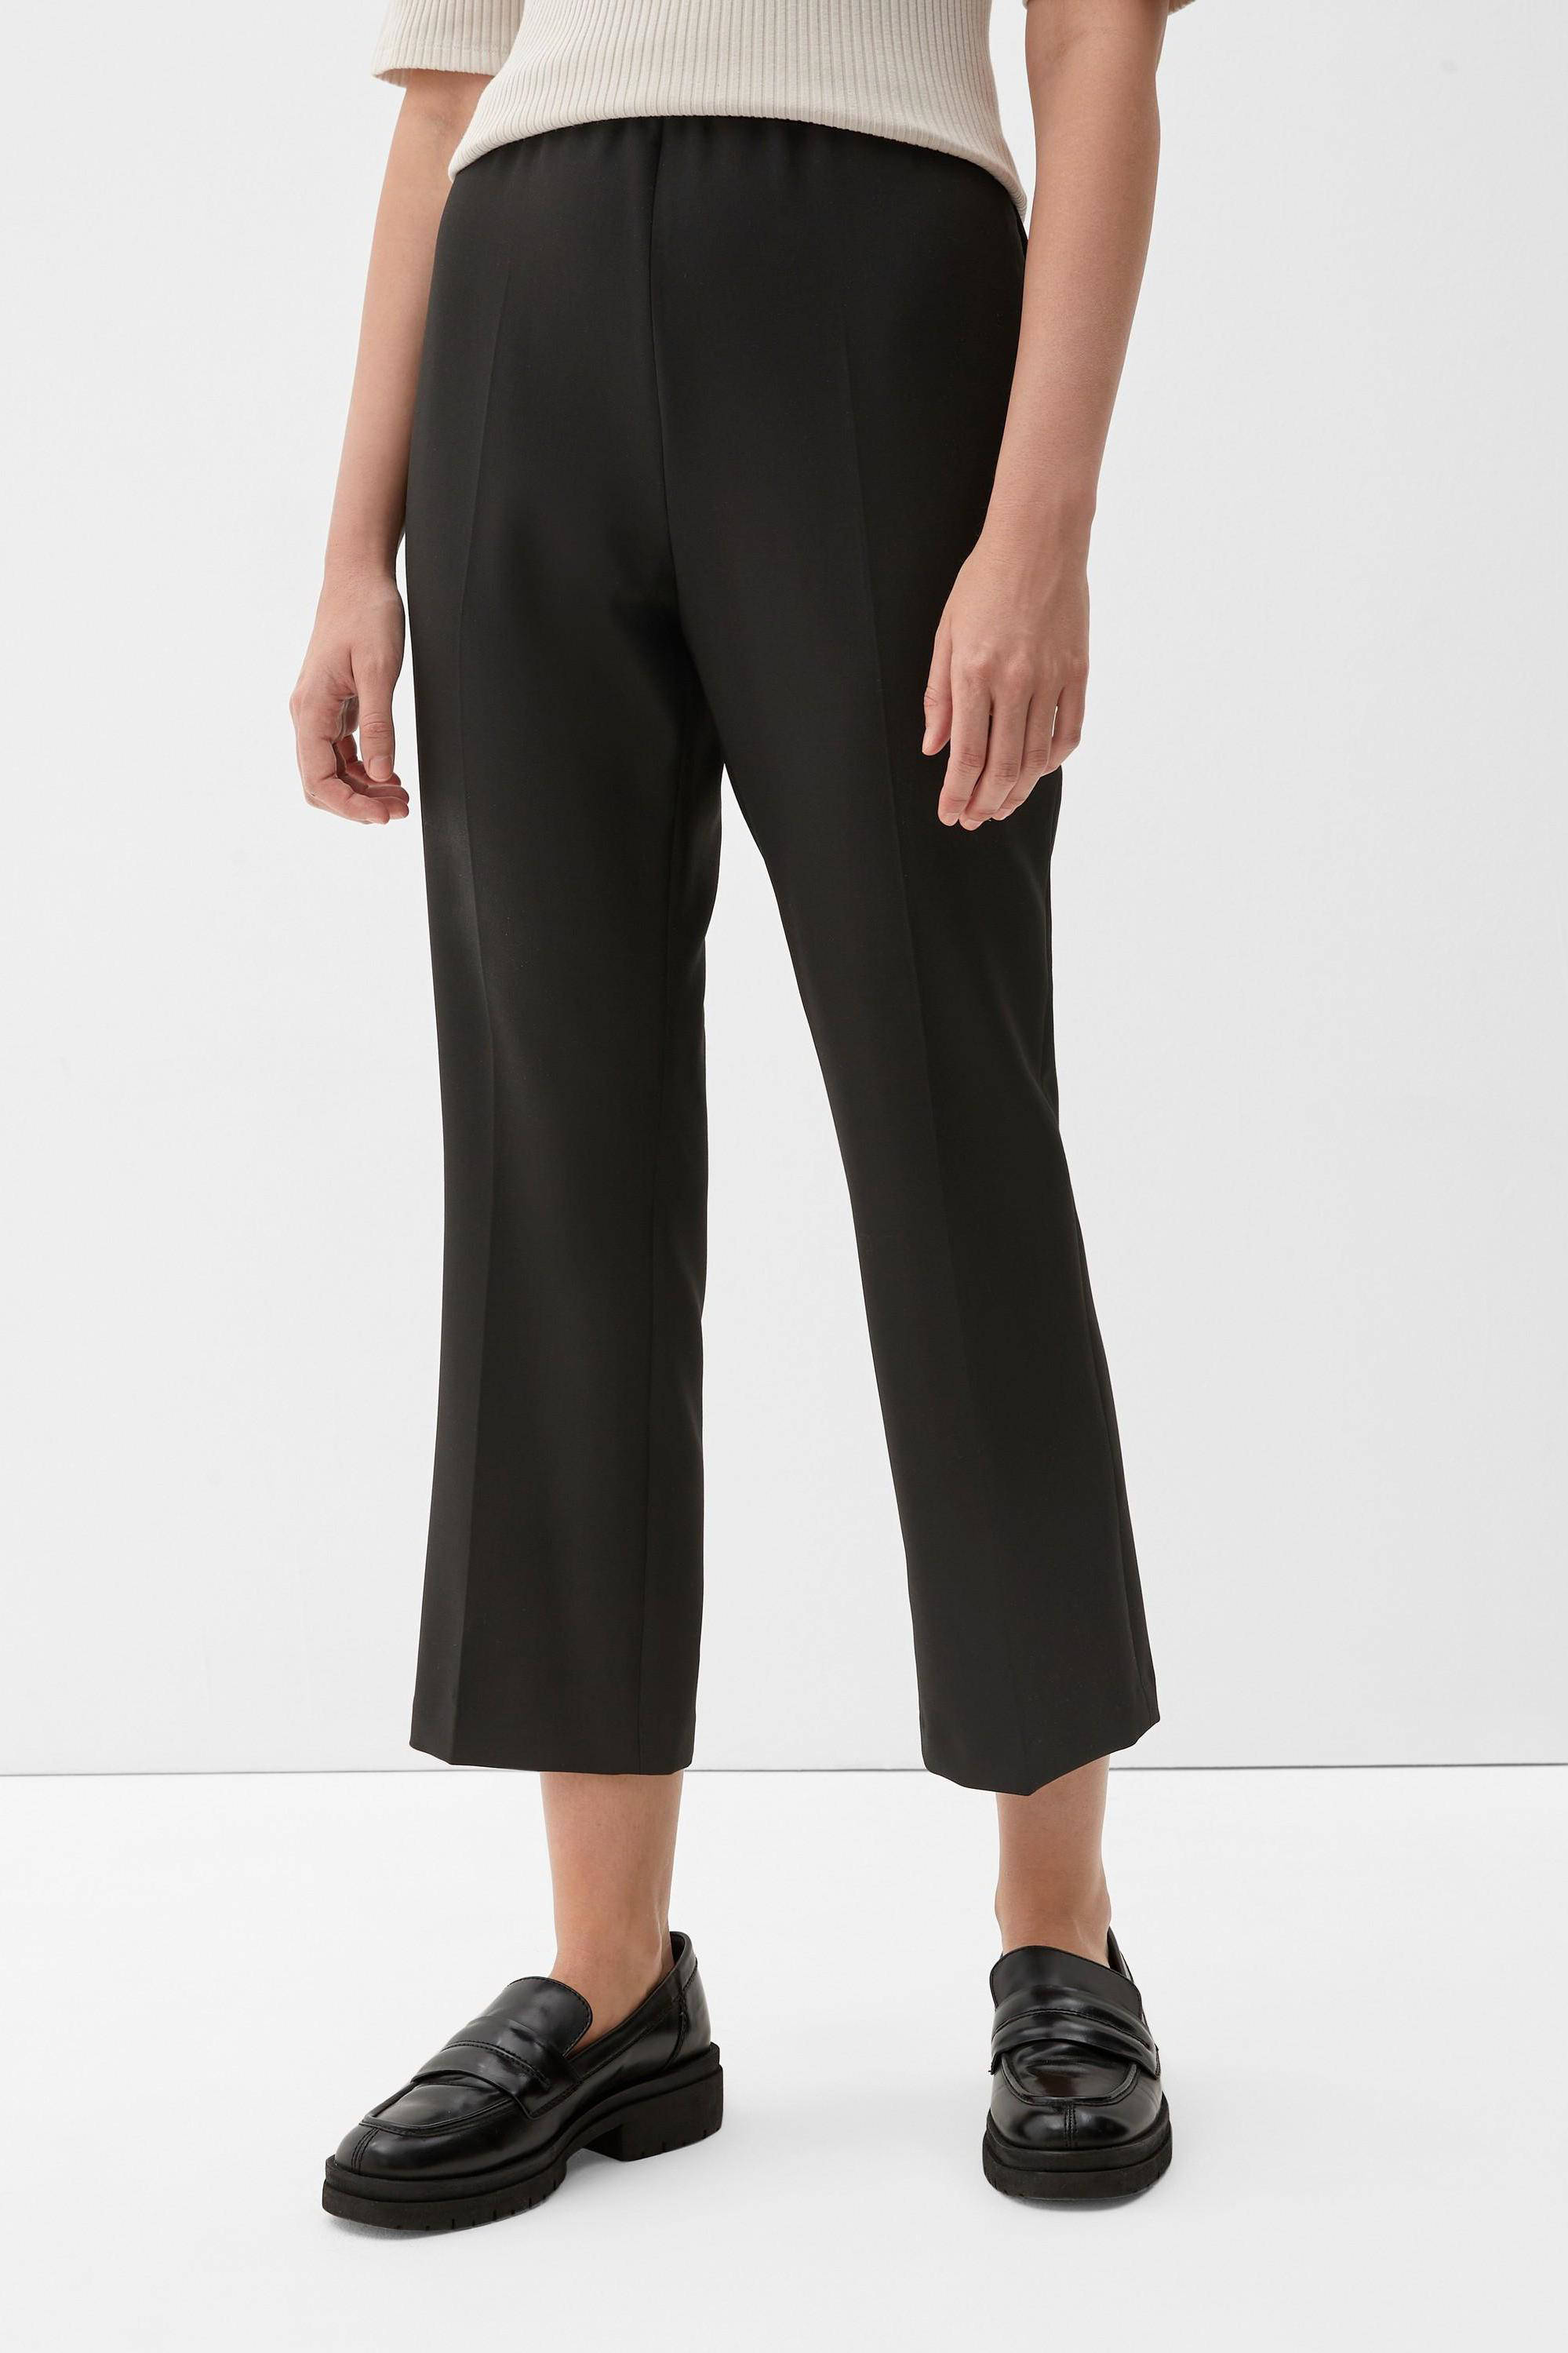 s.Oliver Black Label 7\/8-broek zwart casual uitstraling Mode Broeken 7/8-broeken 